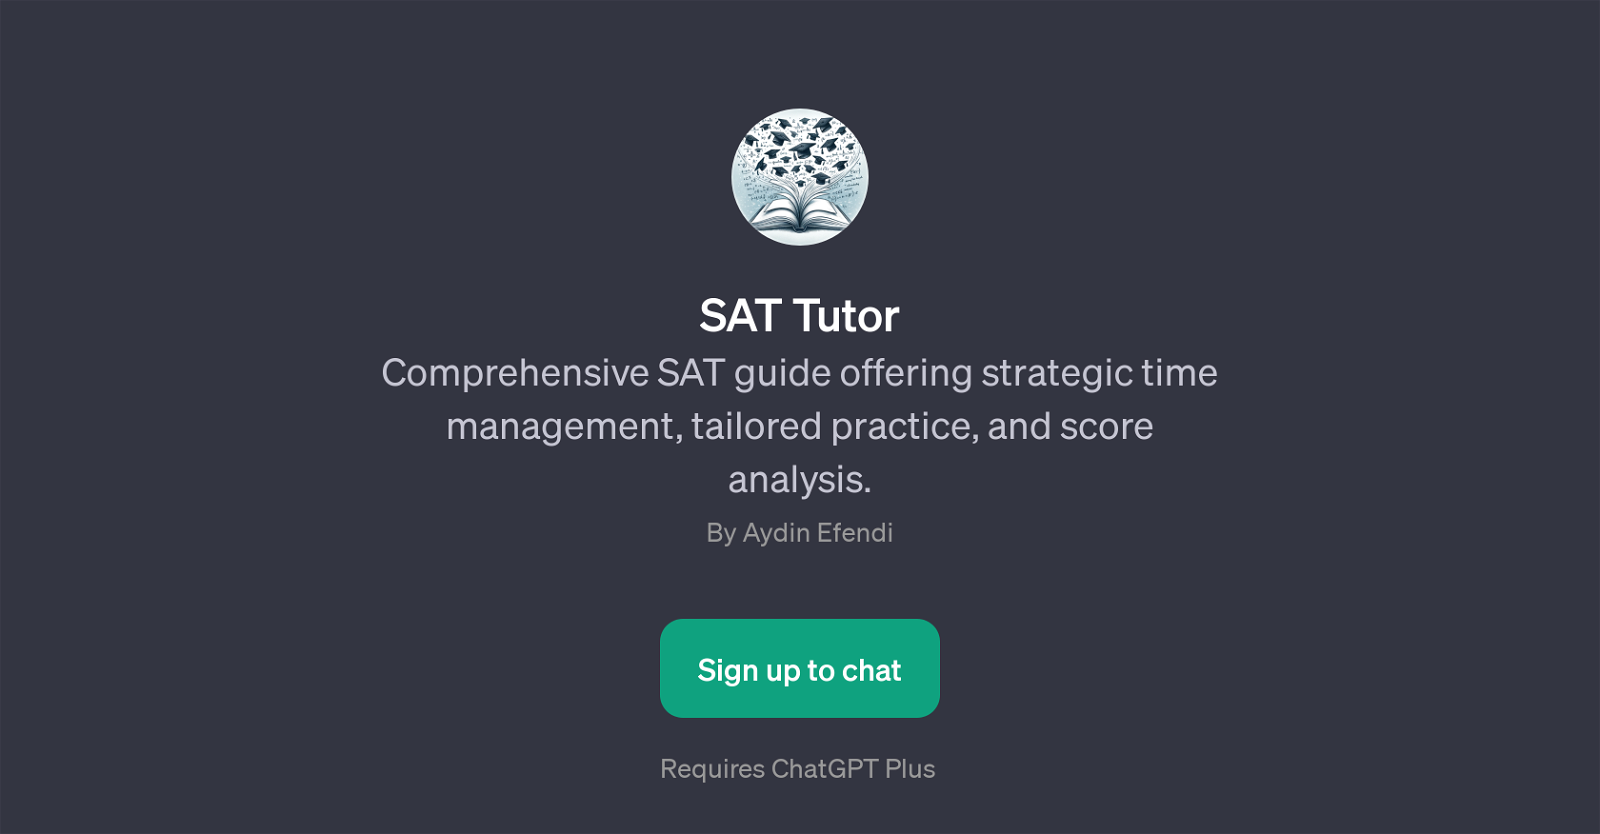 SAT Tutor website